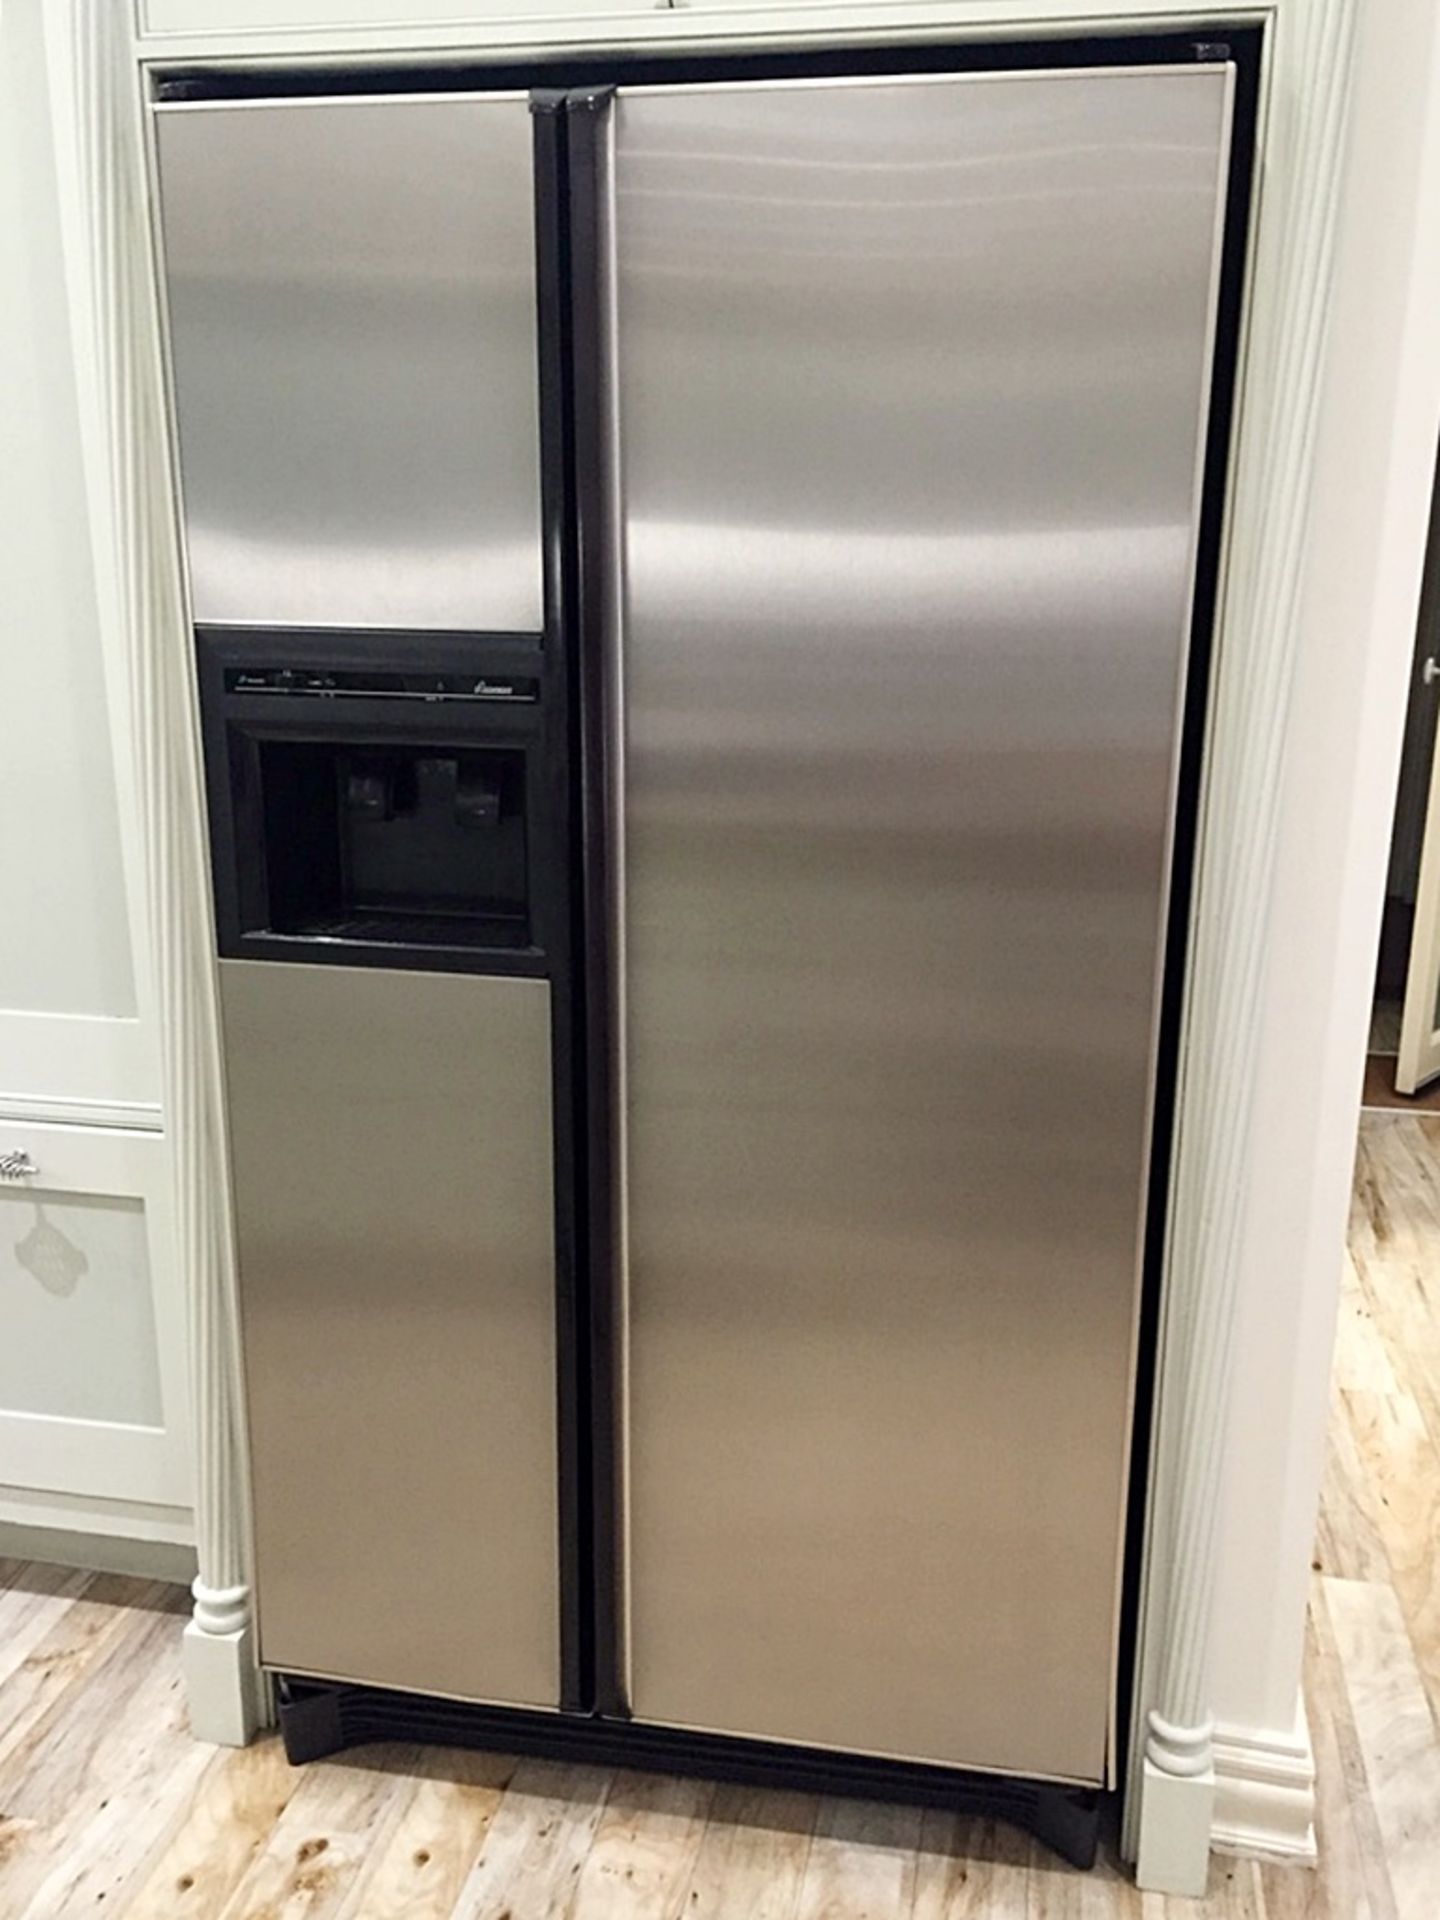 1 x Large "Amana" American Double Door Fridge Freezer With Water Dispenser - Excellent Working